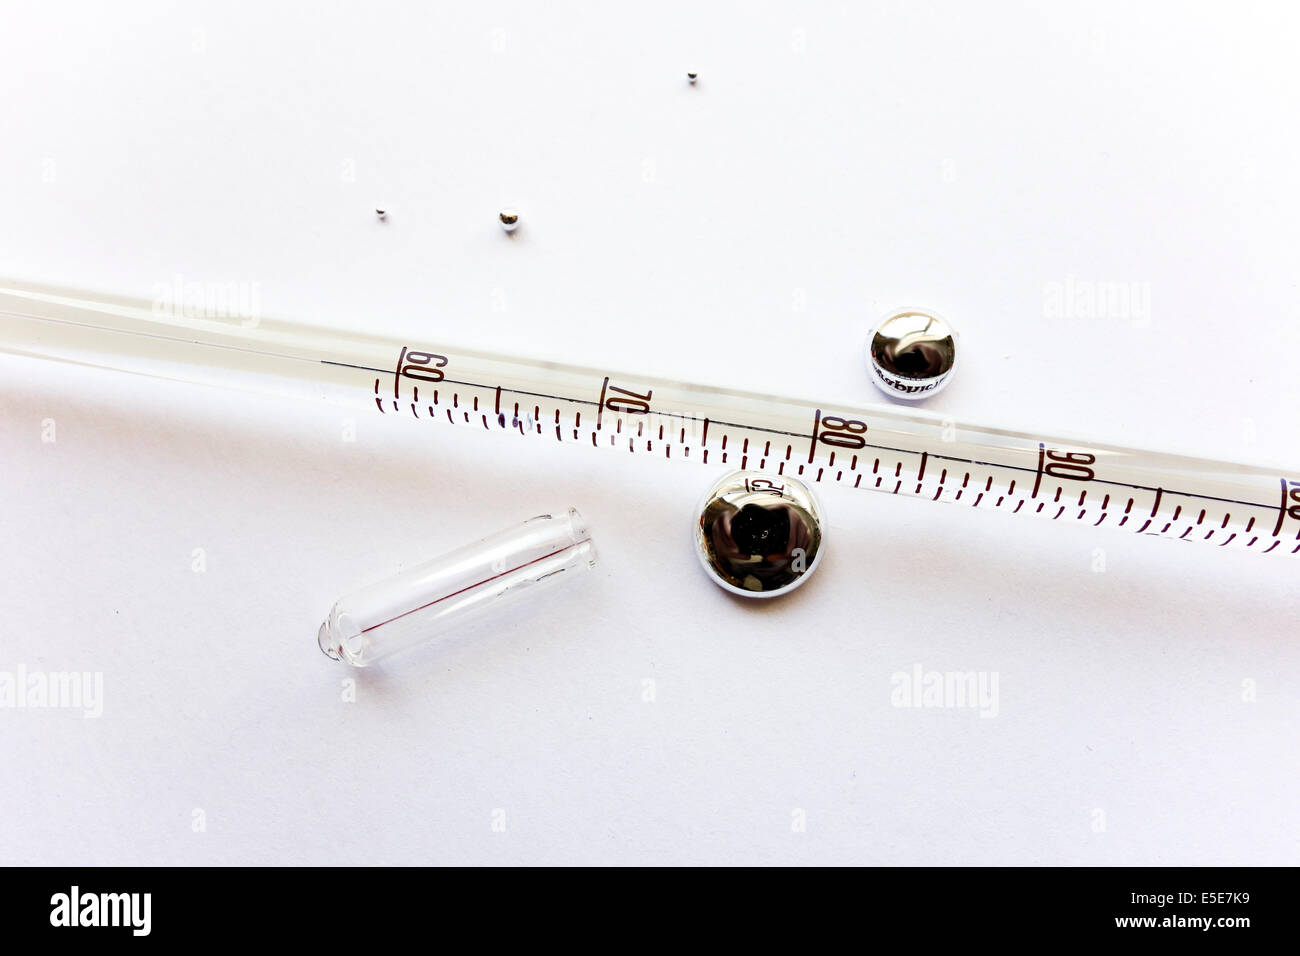 Le mercure thermomètre de verre cassé Photo Stock - Alamy